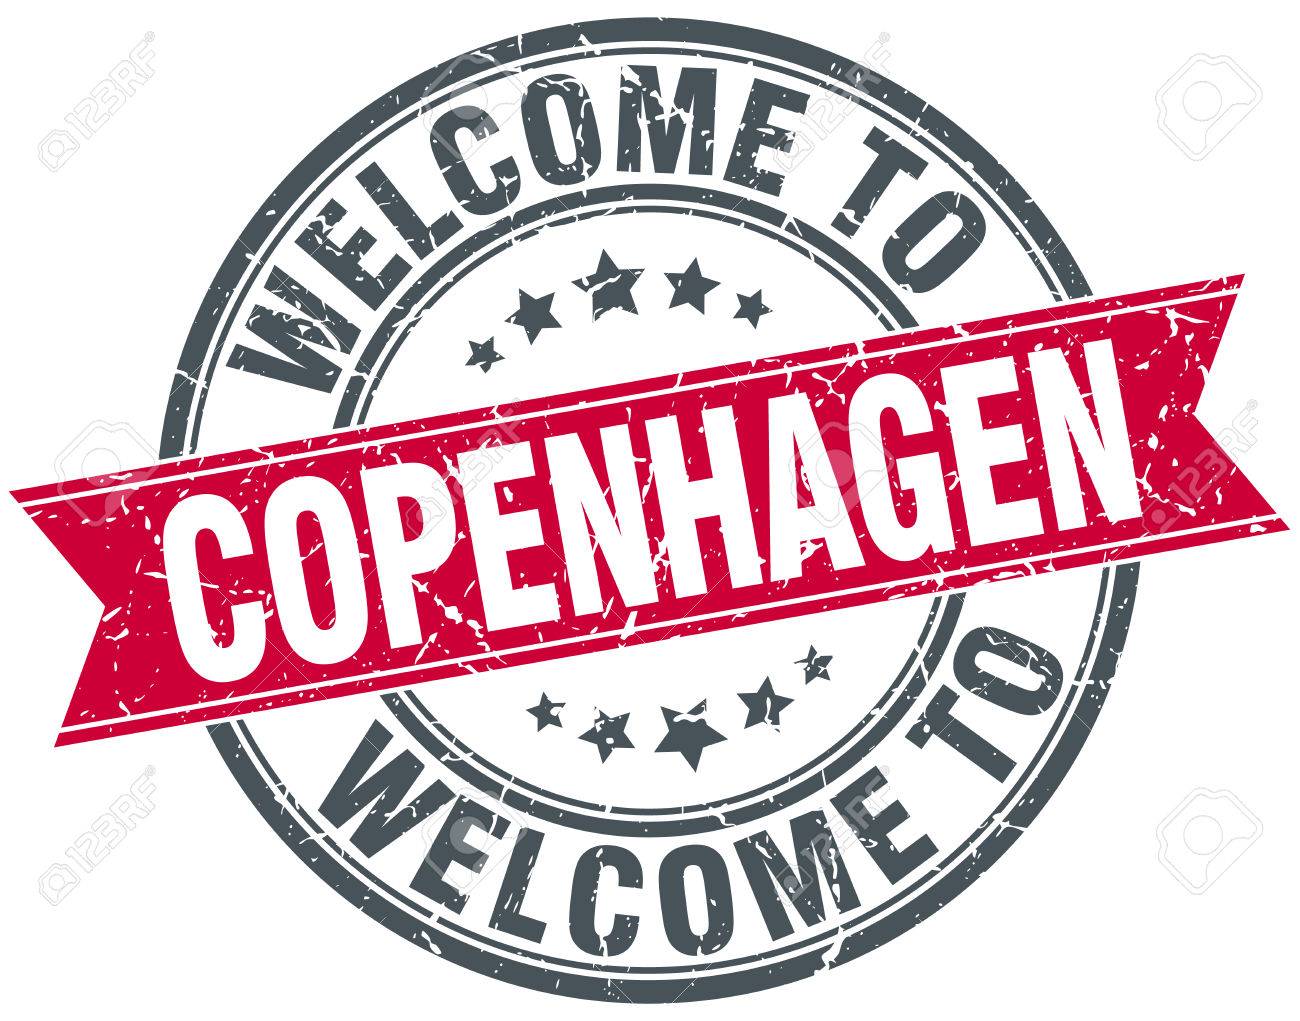 51944180-welcome-to-copenhagen-red-round-vintage-stamp.jpg